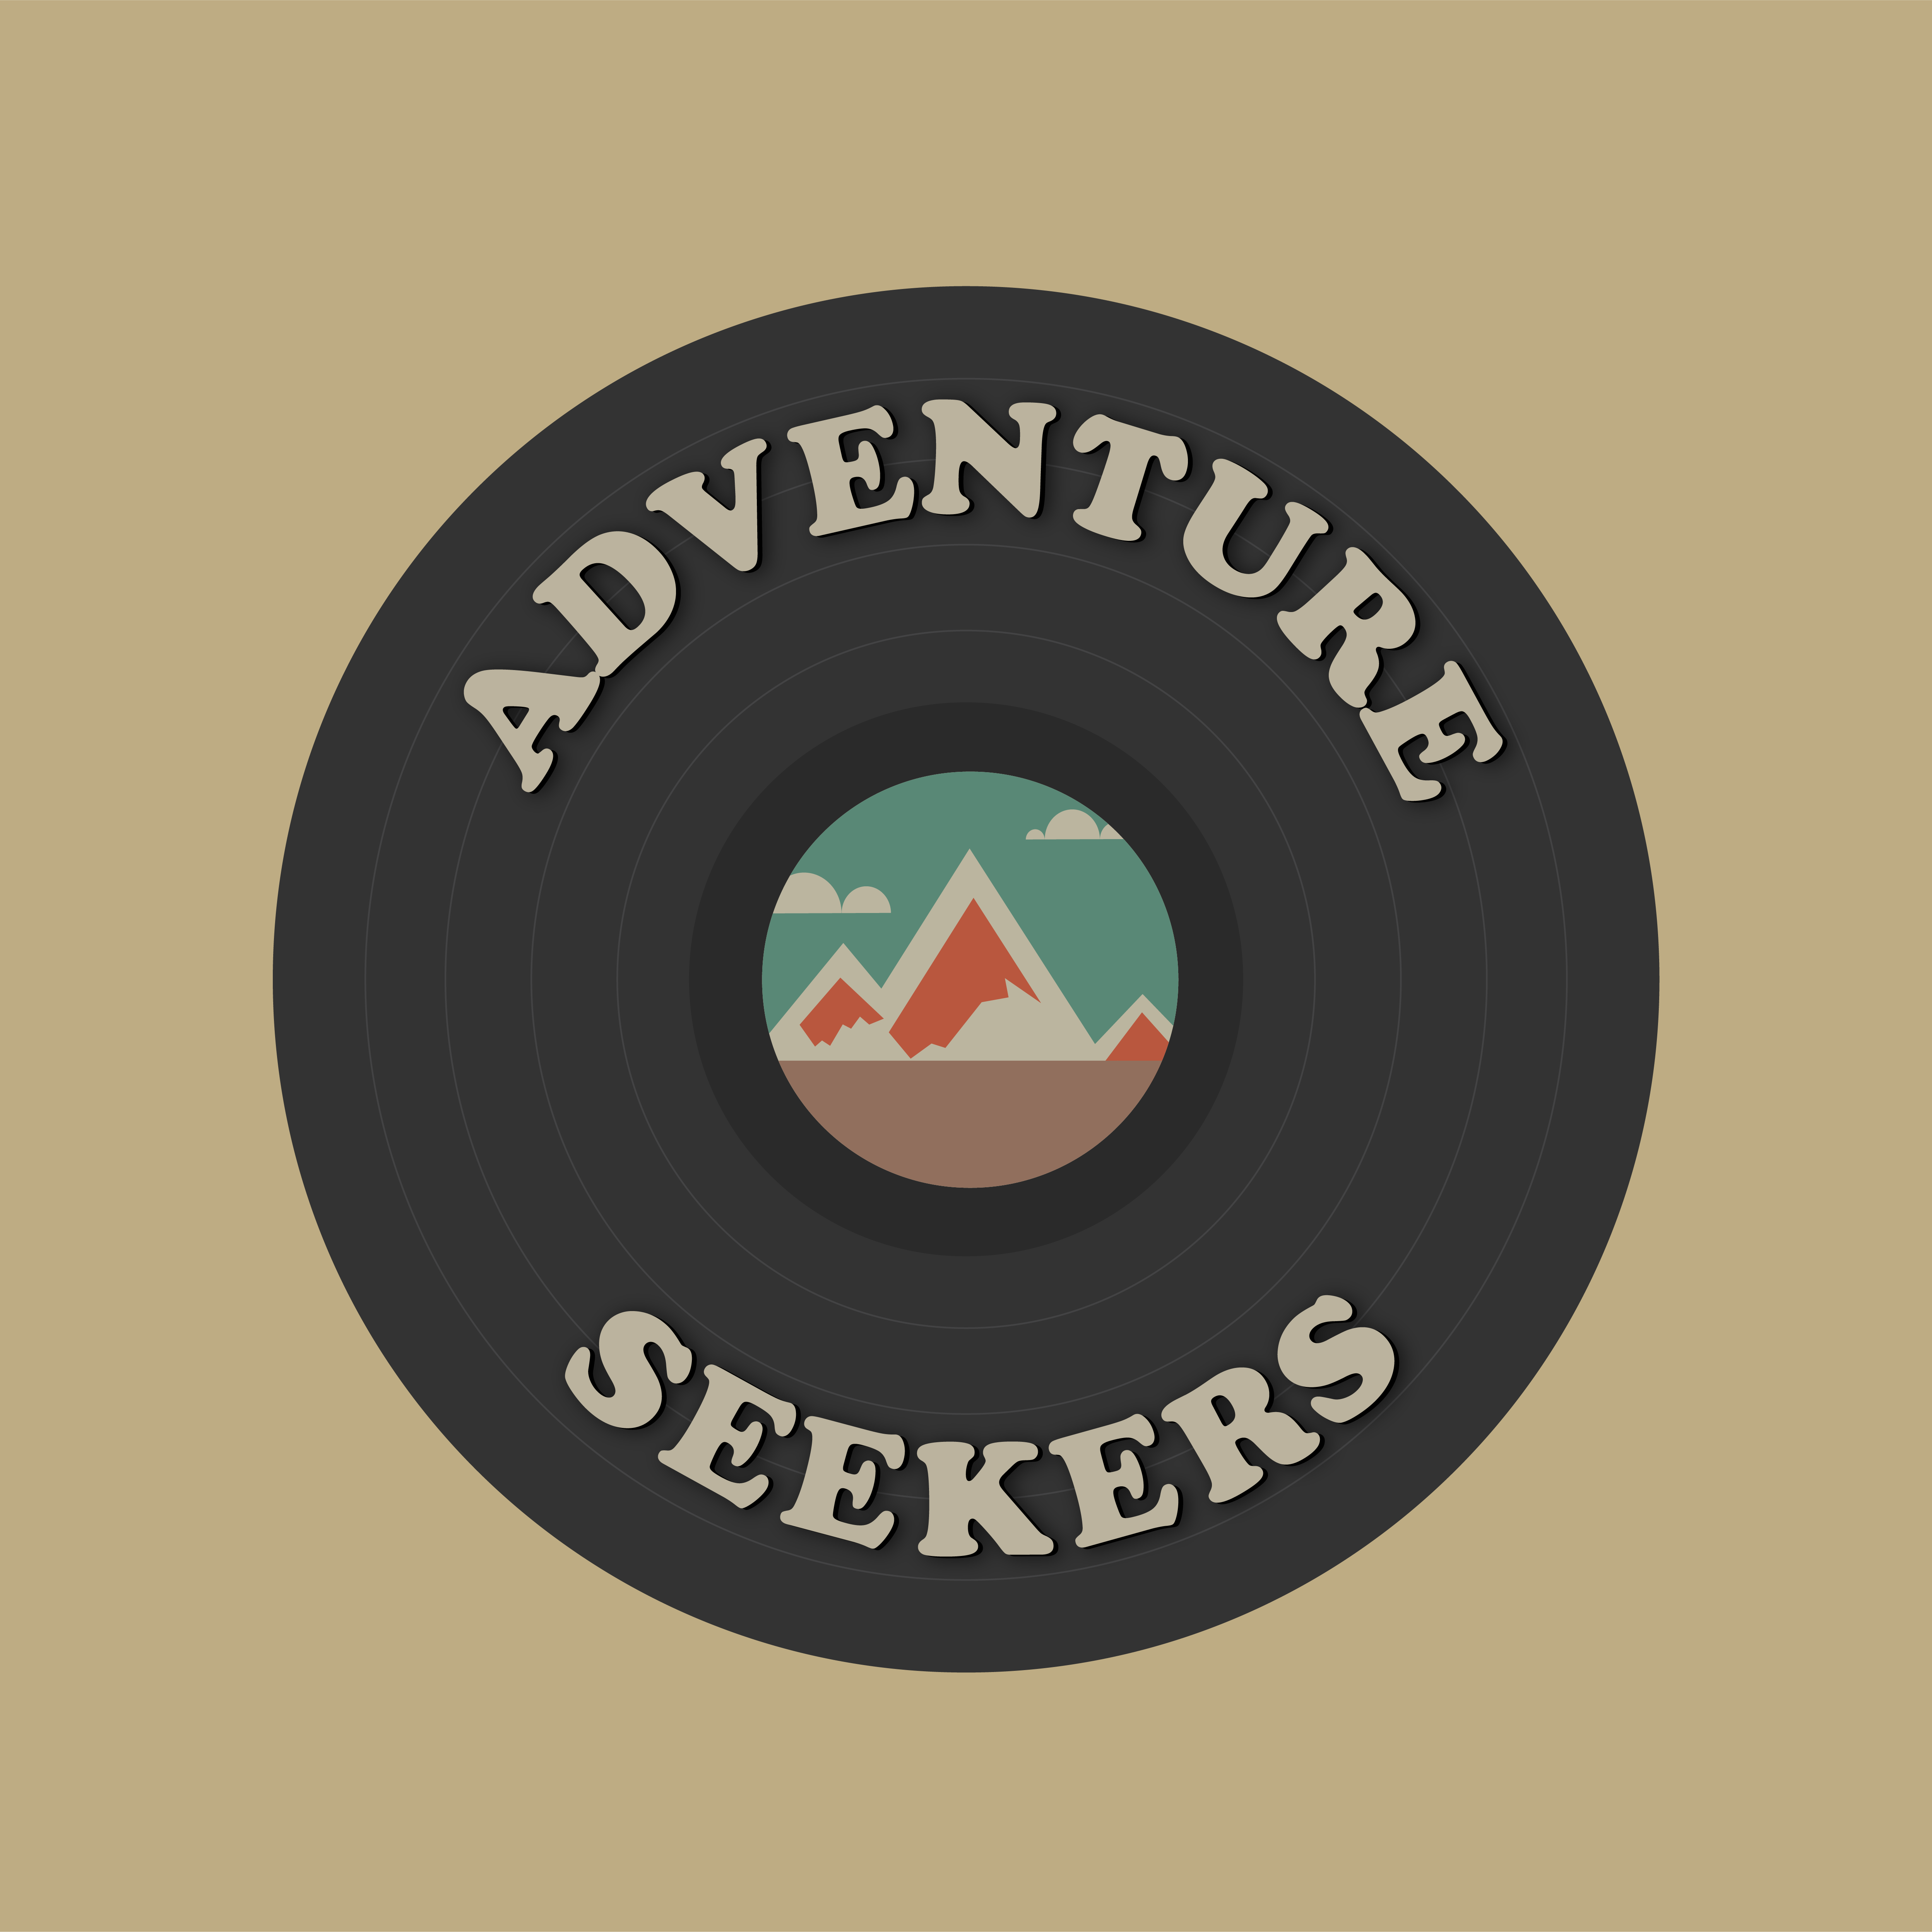 Series “Adventure Seekers”